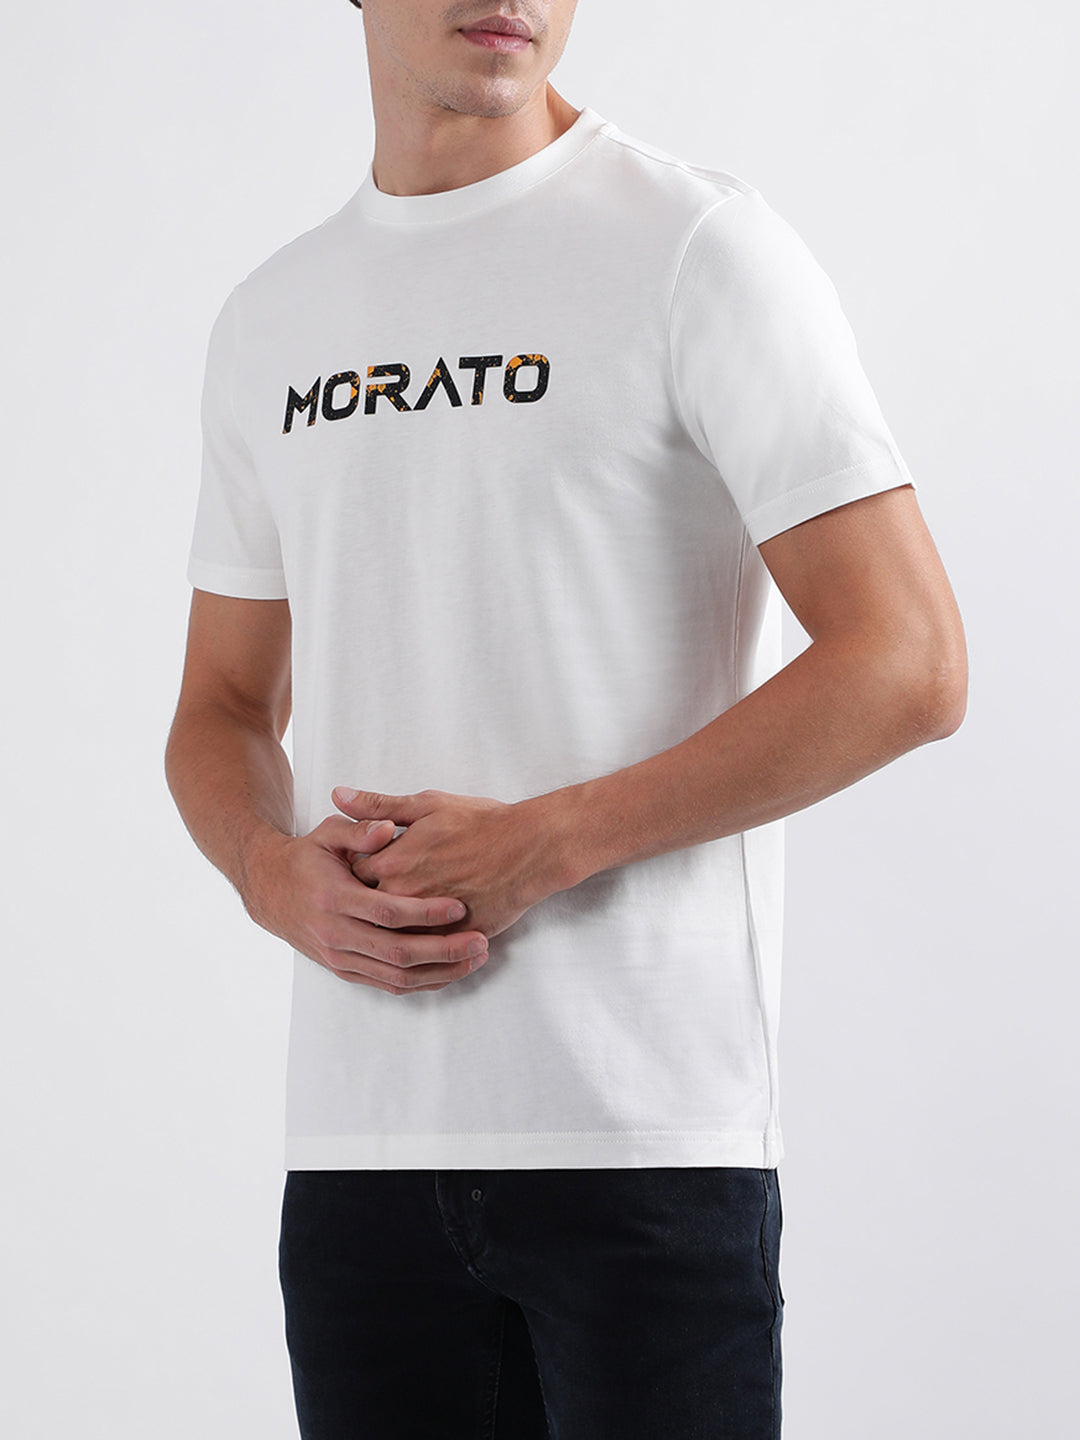 Antony Morato White Regular Fit T-Shirt